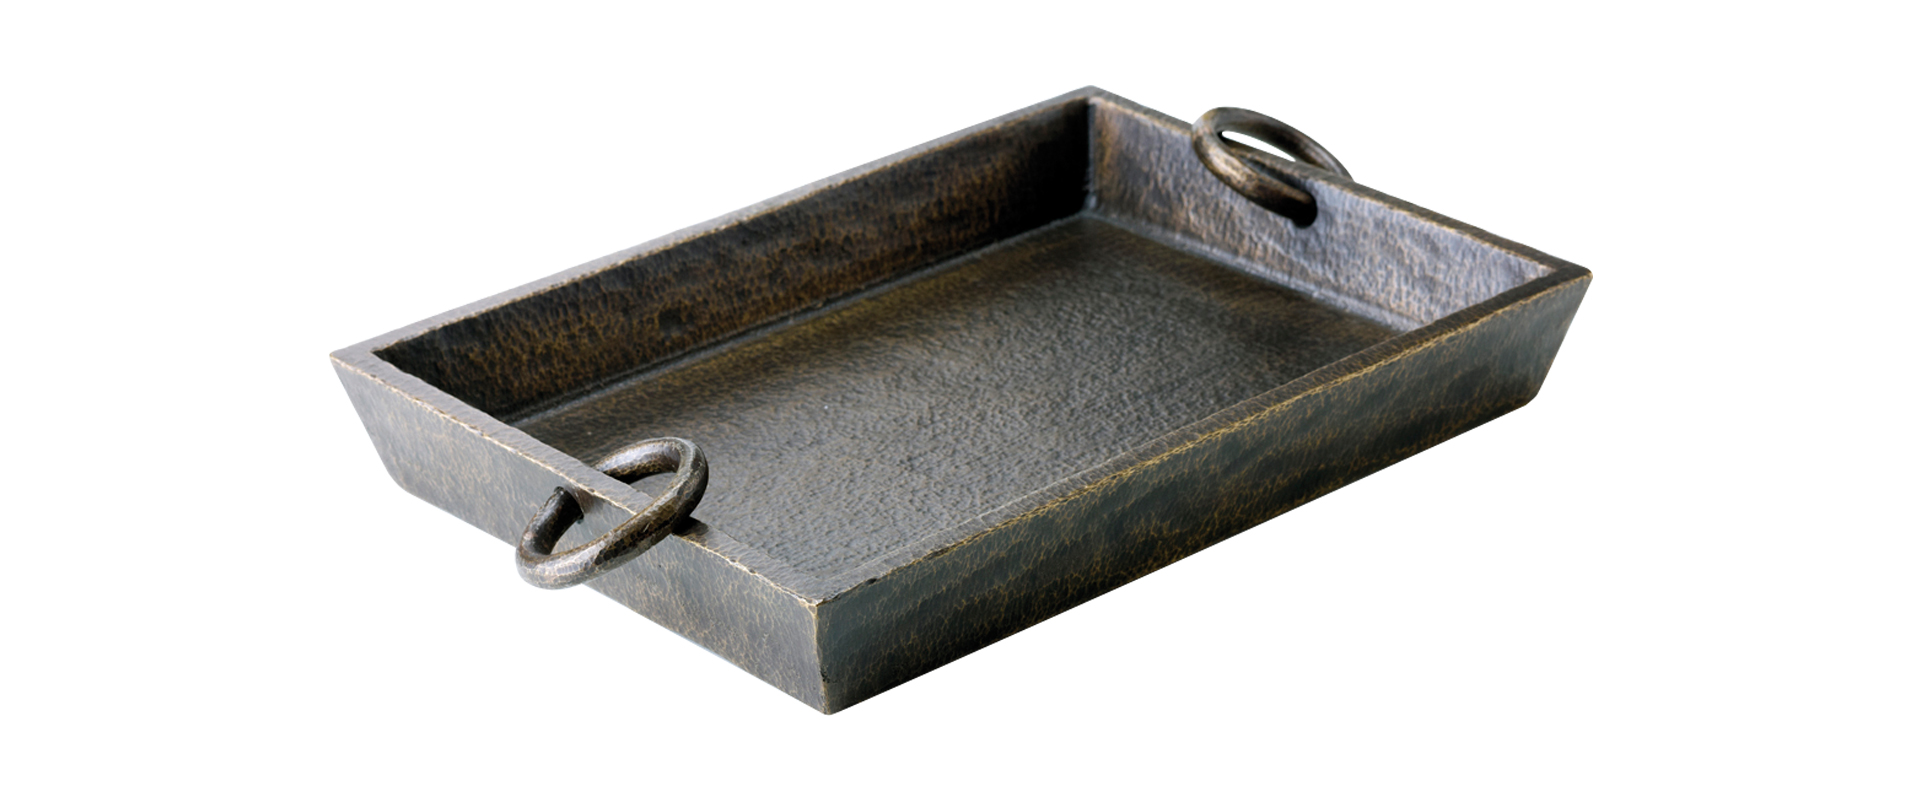 Vuotatasche est un vide-poches en bronze. Cet objet figure dans le catalogue Promemoria | Promemoria